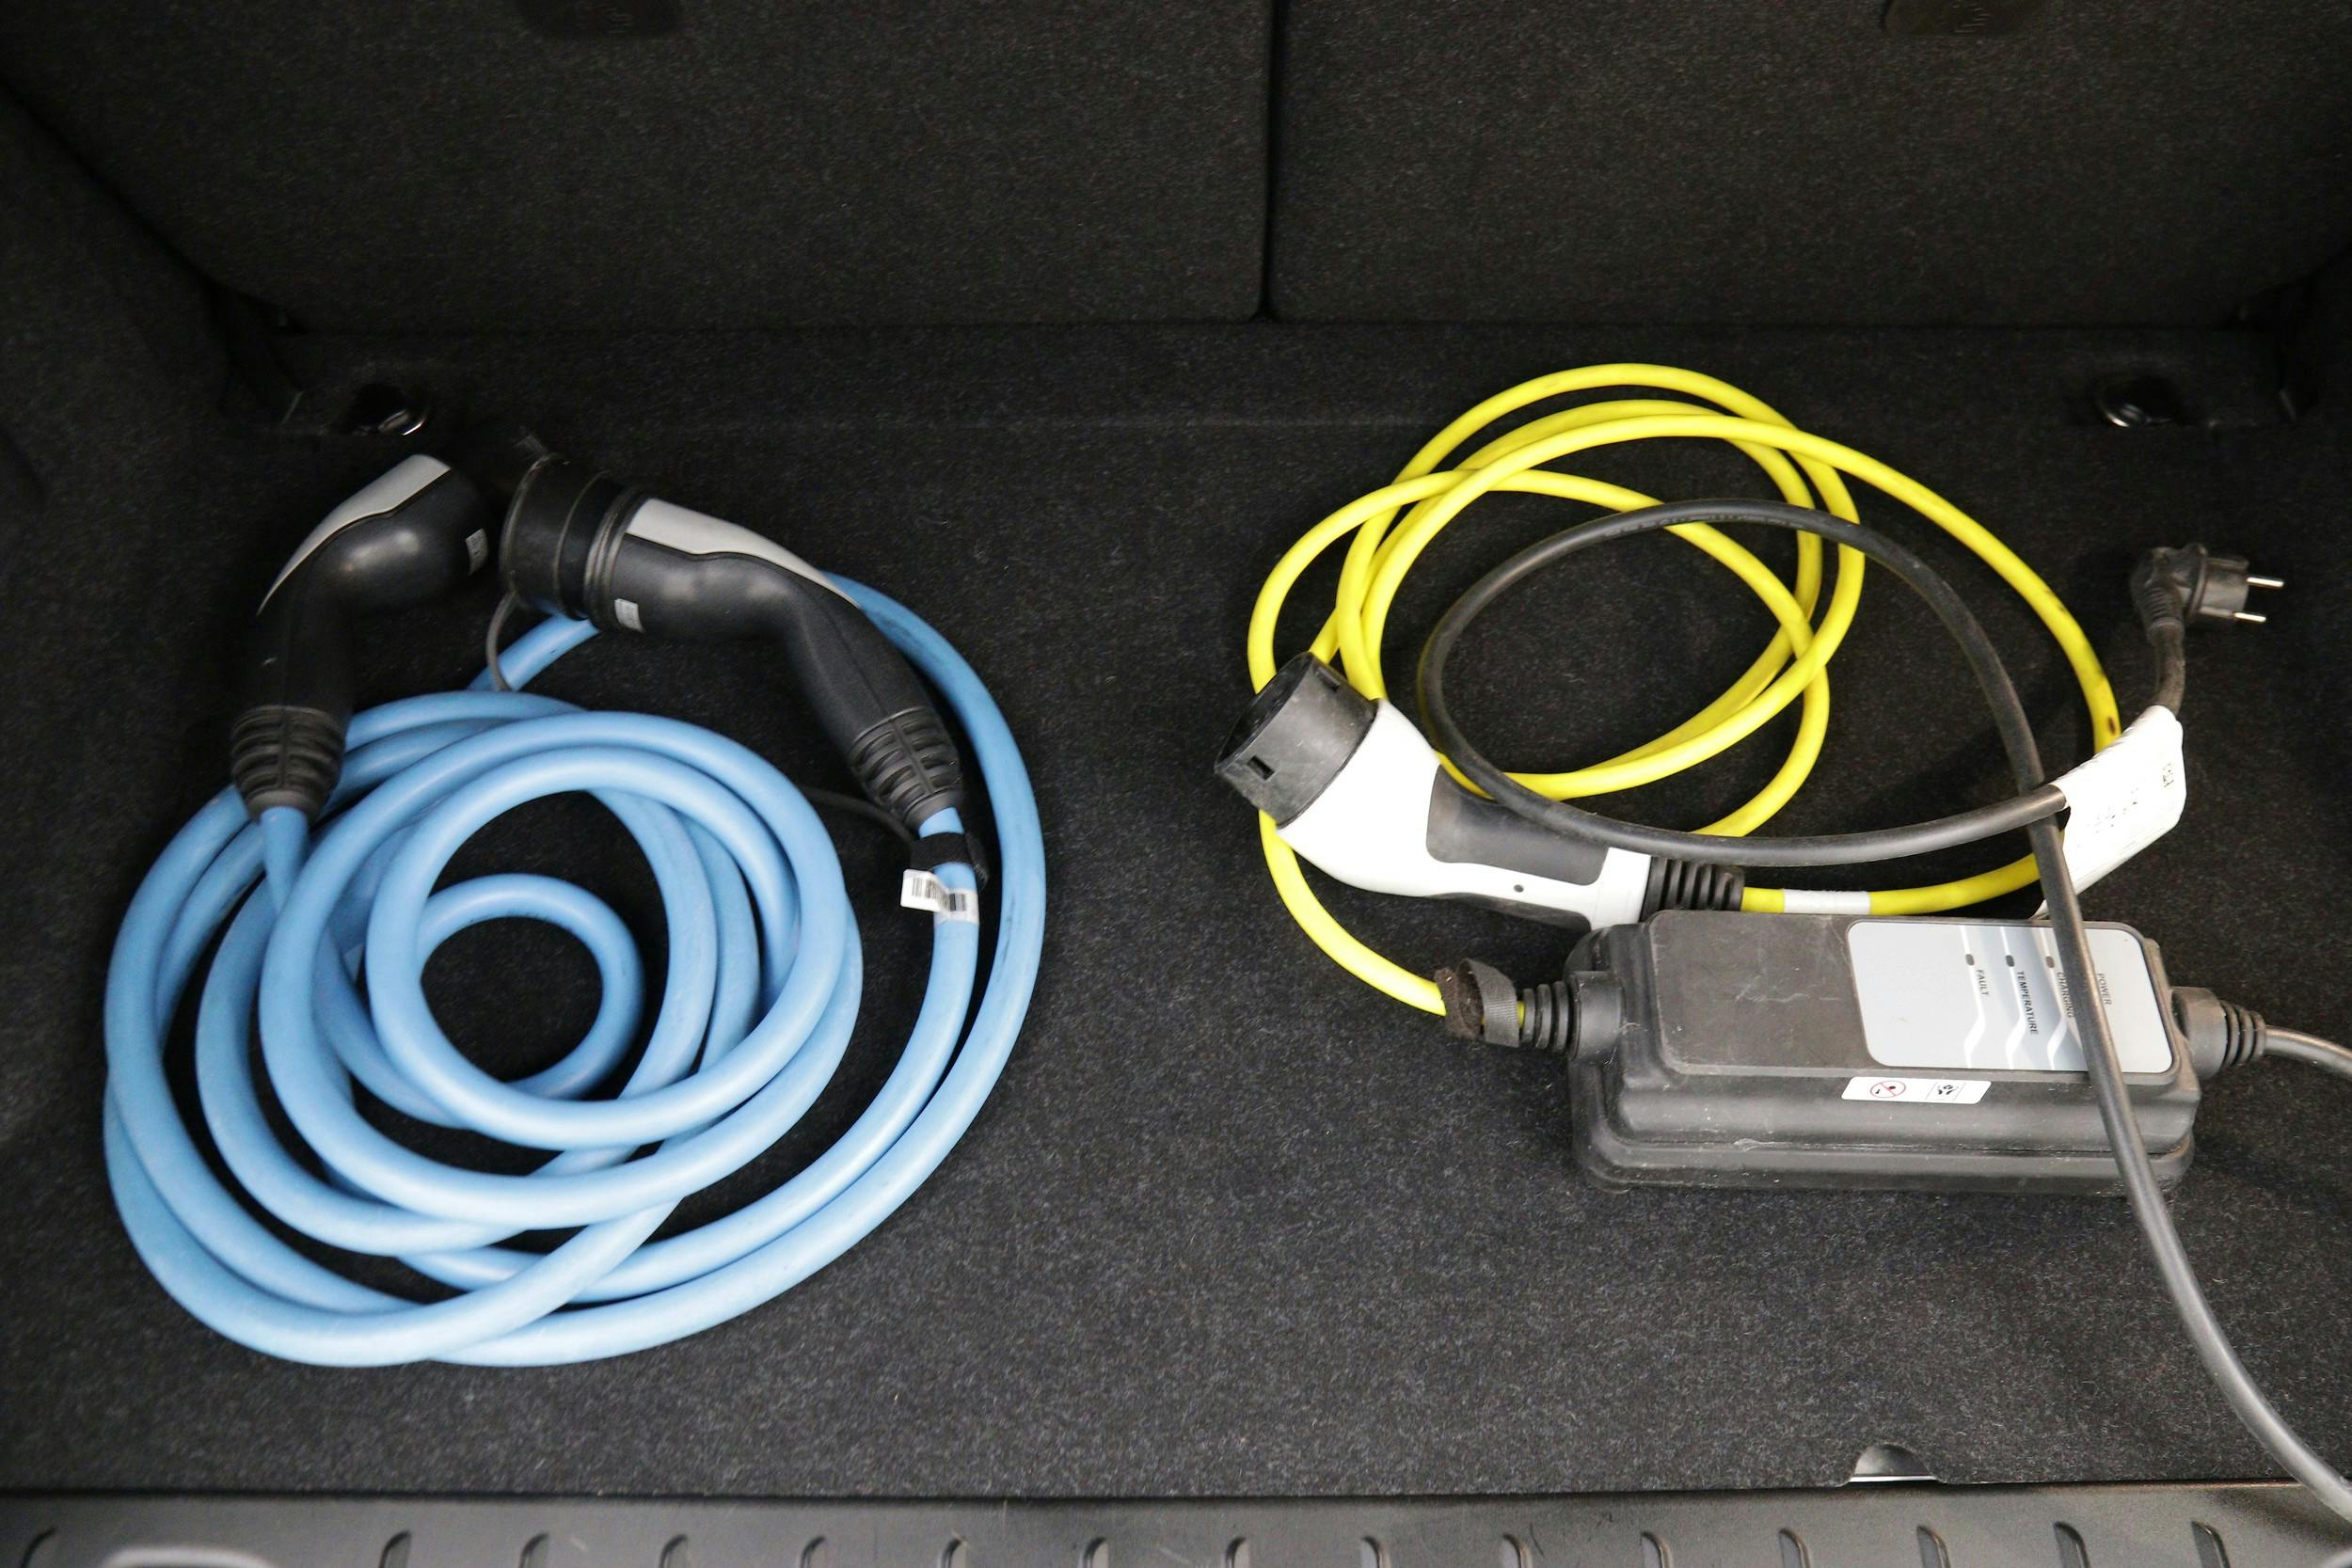 Två laddkablar med Typ 2-kontakt - för laddning i laddstolpe/laddbox samt eluttag